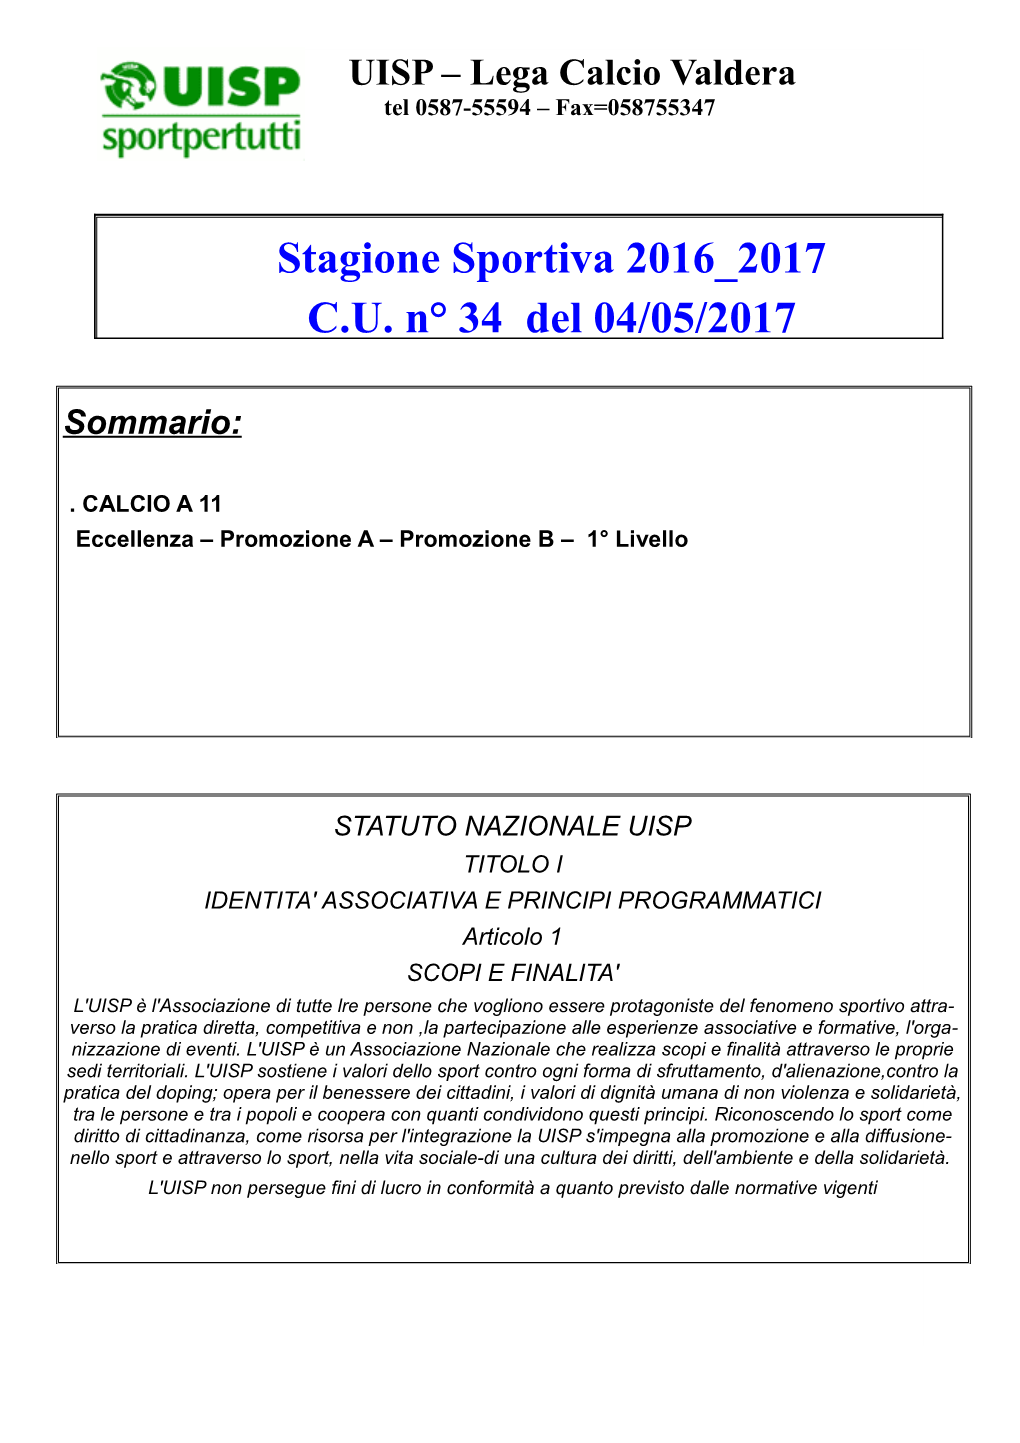 Stagione Sportiva 2016 2017 C.U. N° 34 Del 04/05/2017